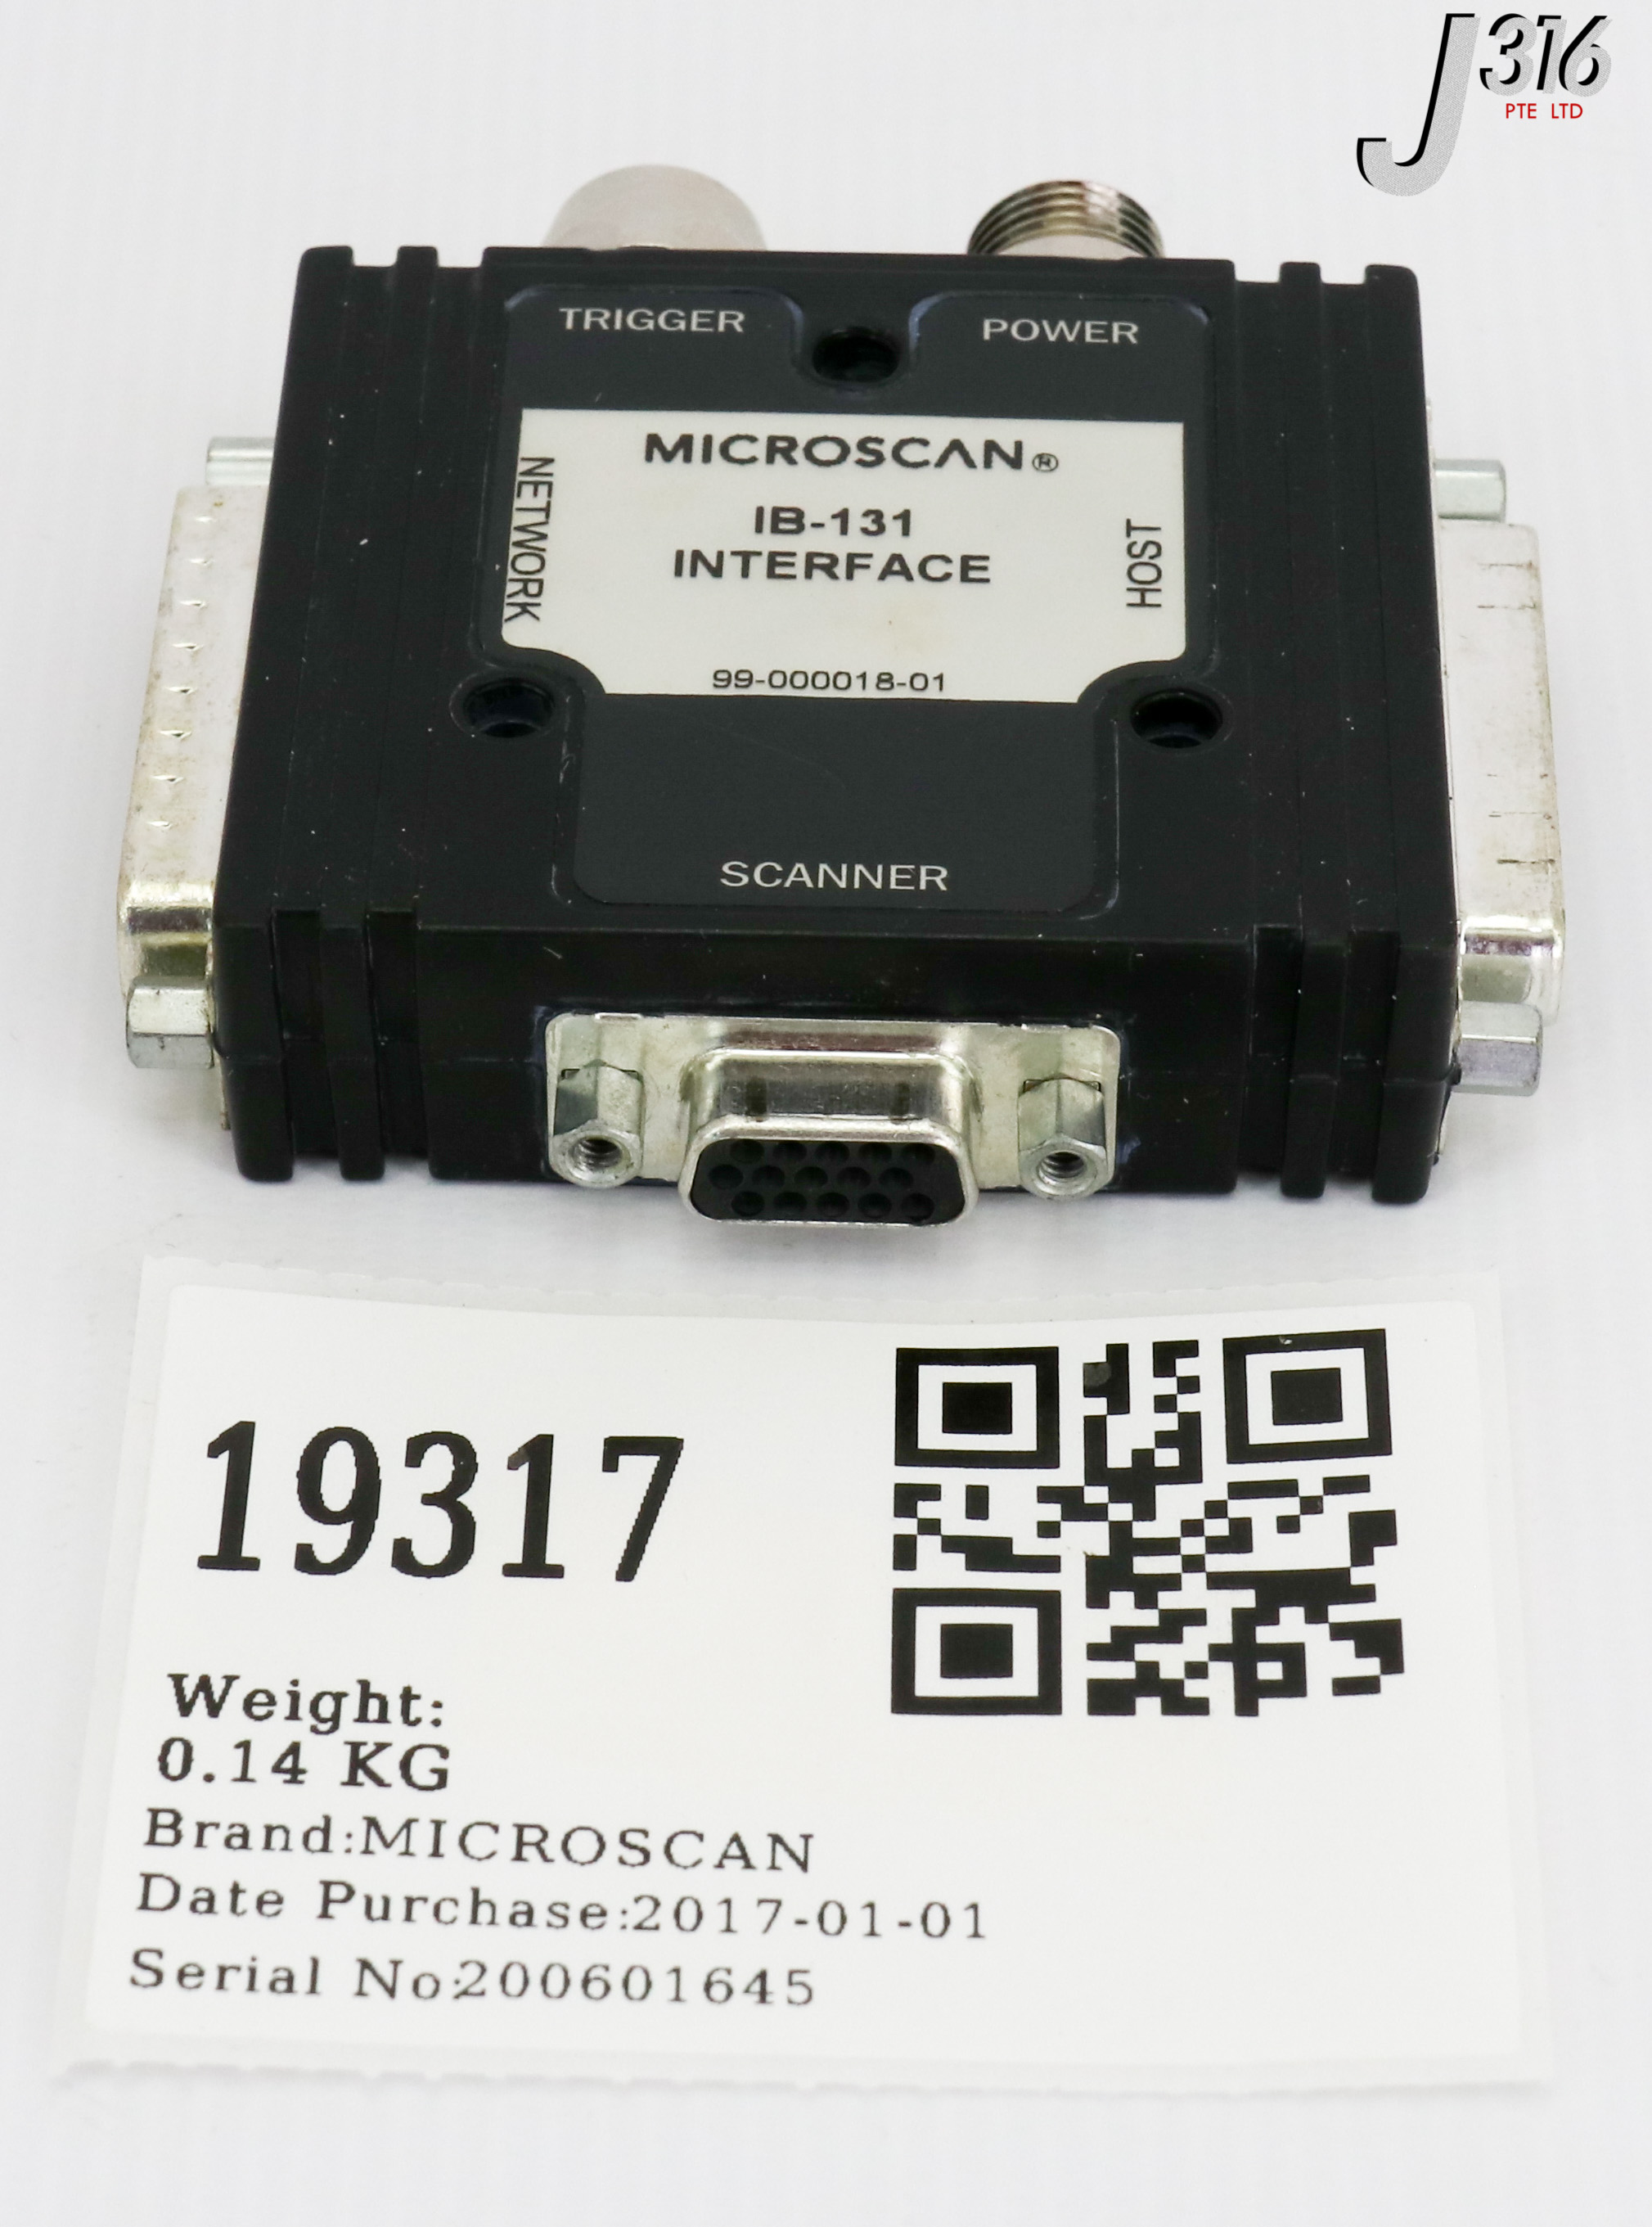 Microscan 99-000018-01 IB-131 interface 